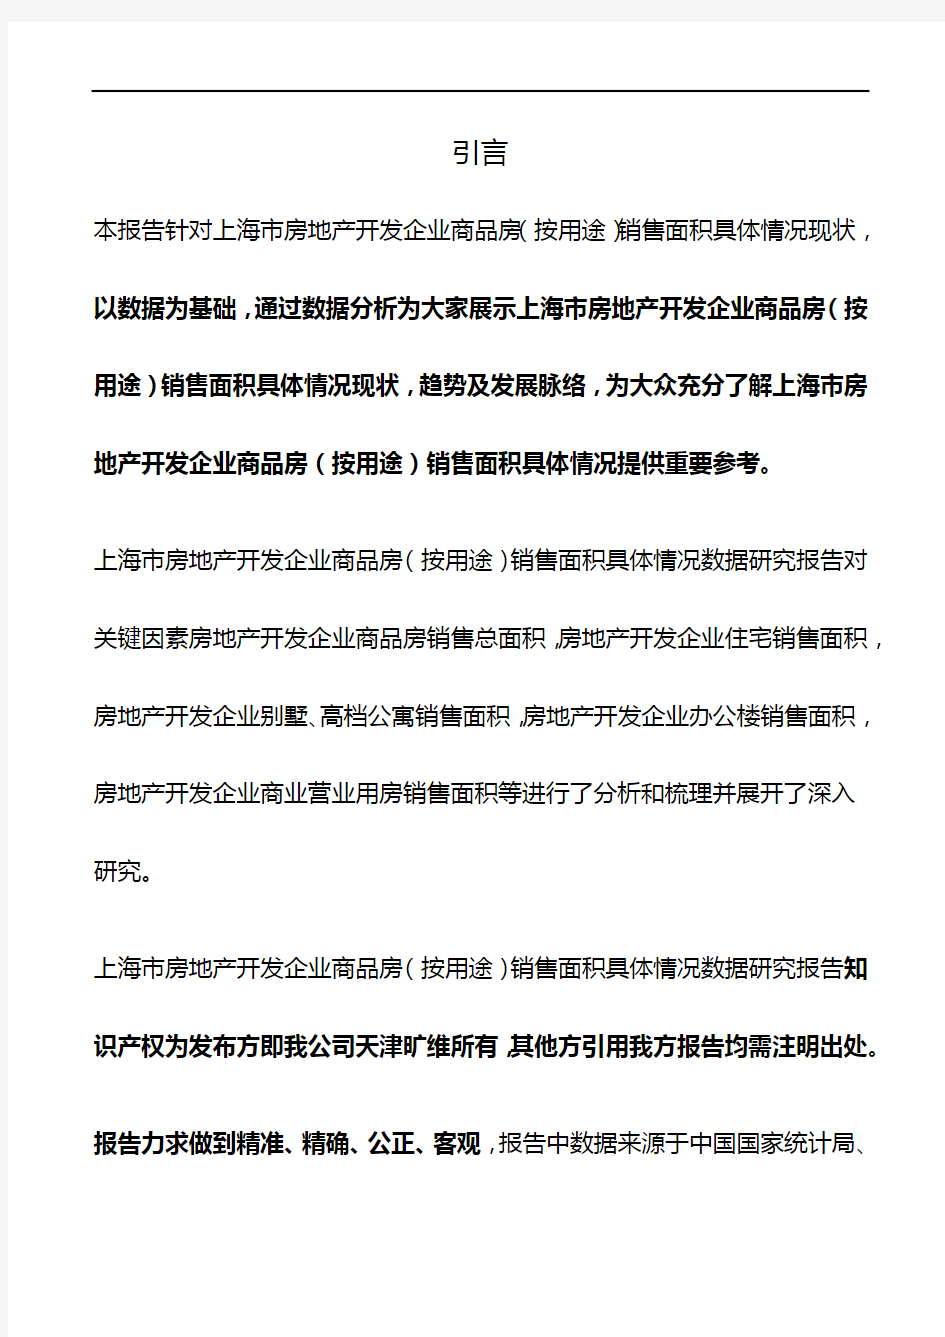 上海市房地产开发企业商品房(按用途)销售面积具体情况3年数据研究报告2019版